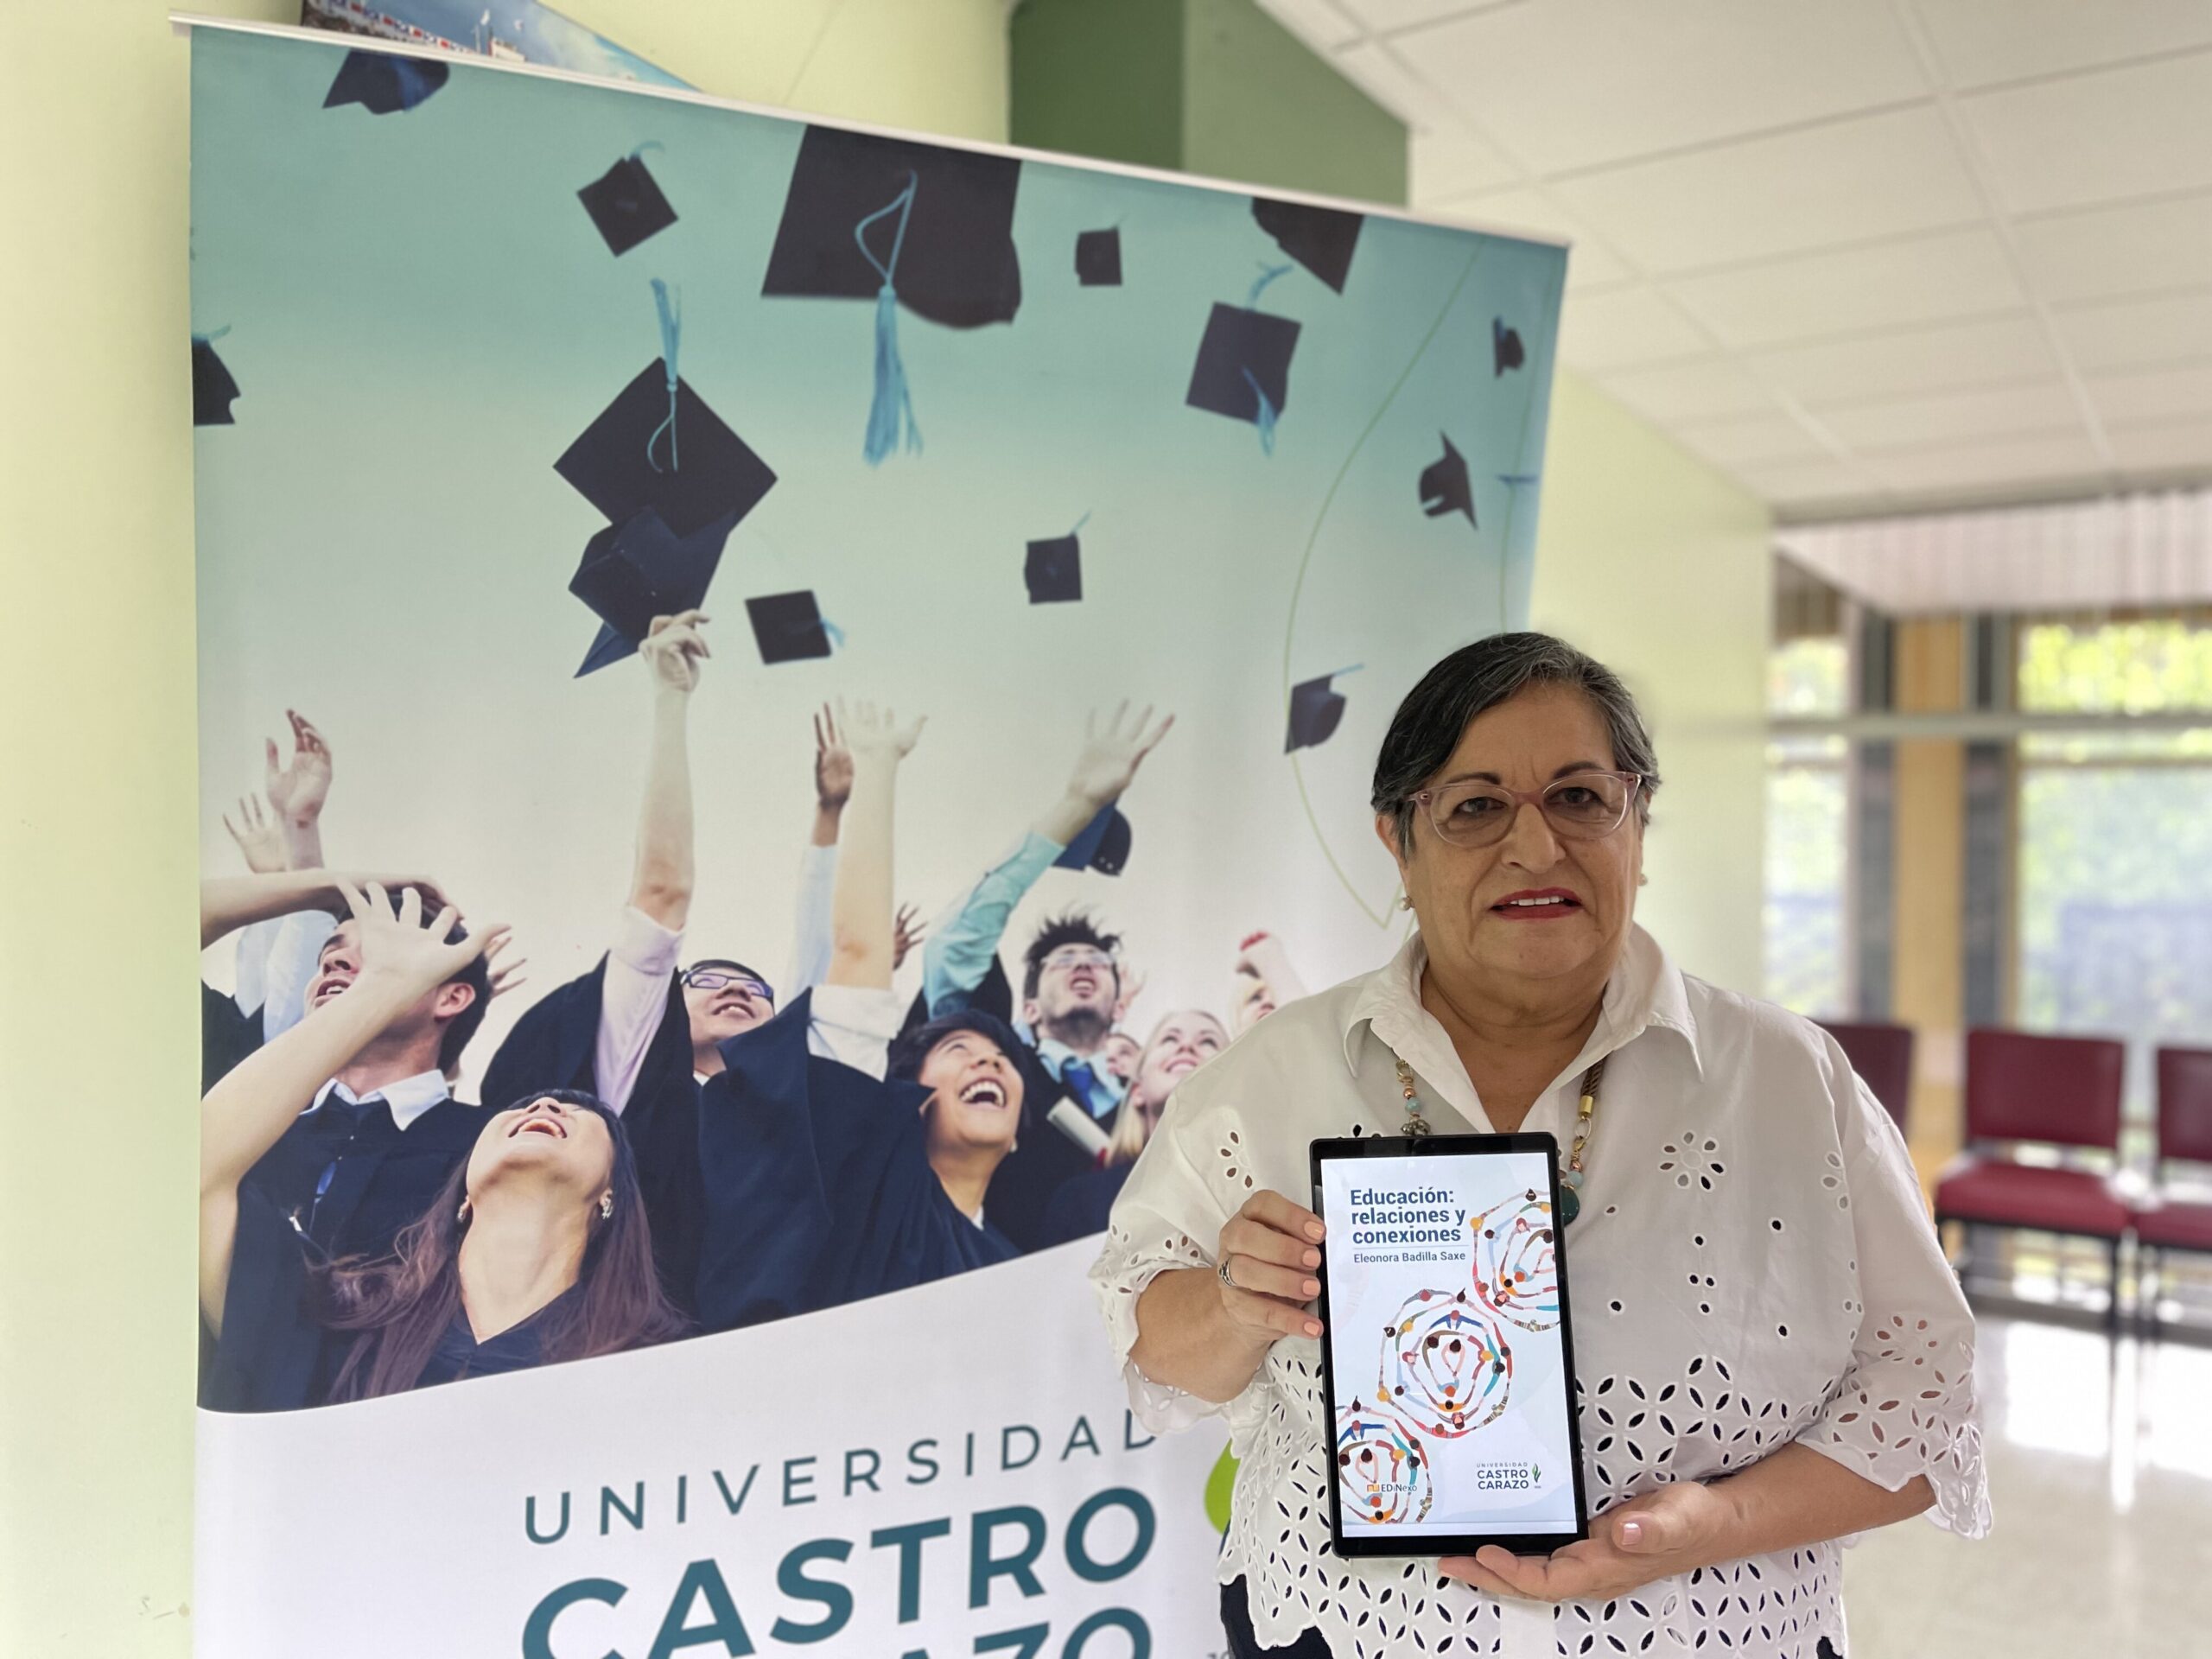 Dra. Eleonora Badilla Saxe publica e-book “Educación: relaciones y conexiones”, un llamado de atención al sistema educativo costarricense